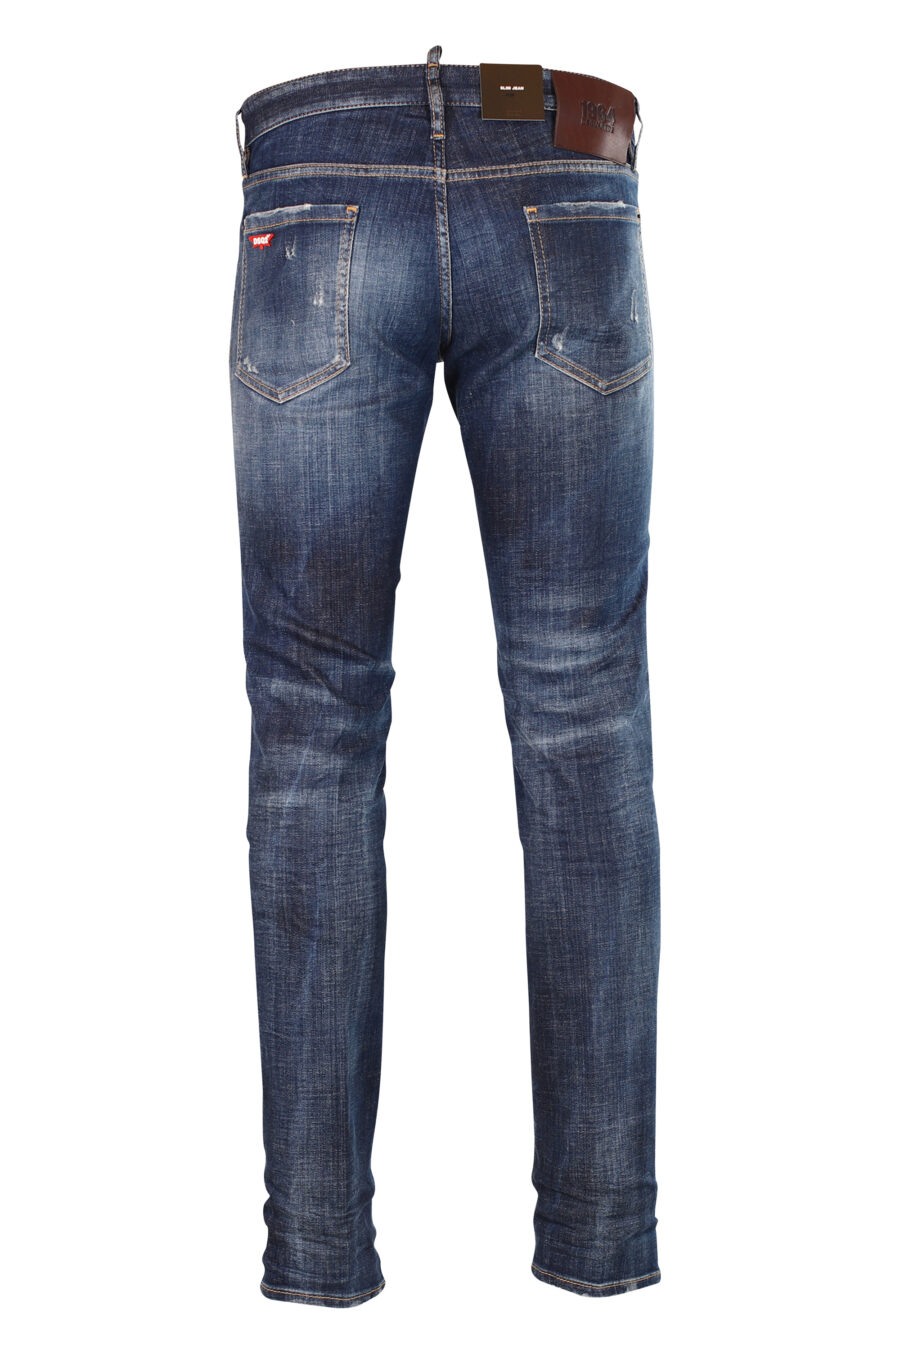 Pantalón vaquero "Slim jean" azul semi desgastado con rotos - 8052134942789 2